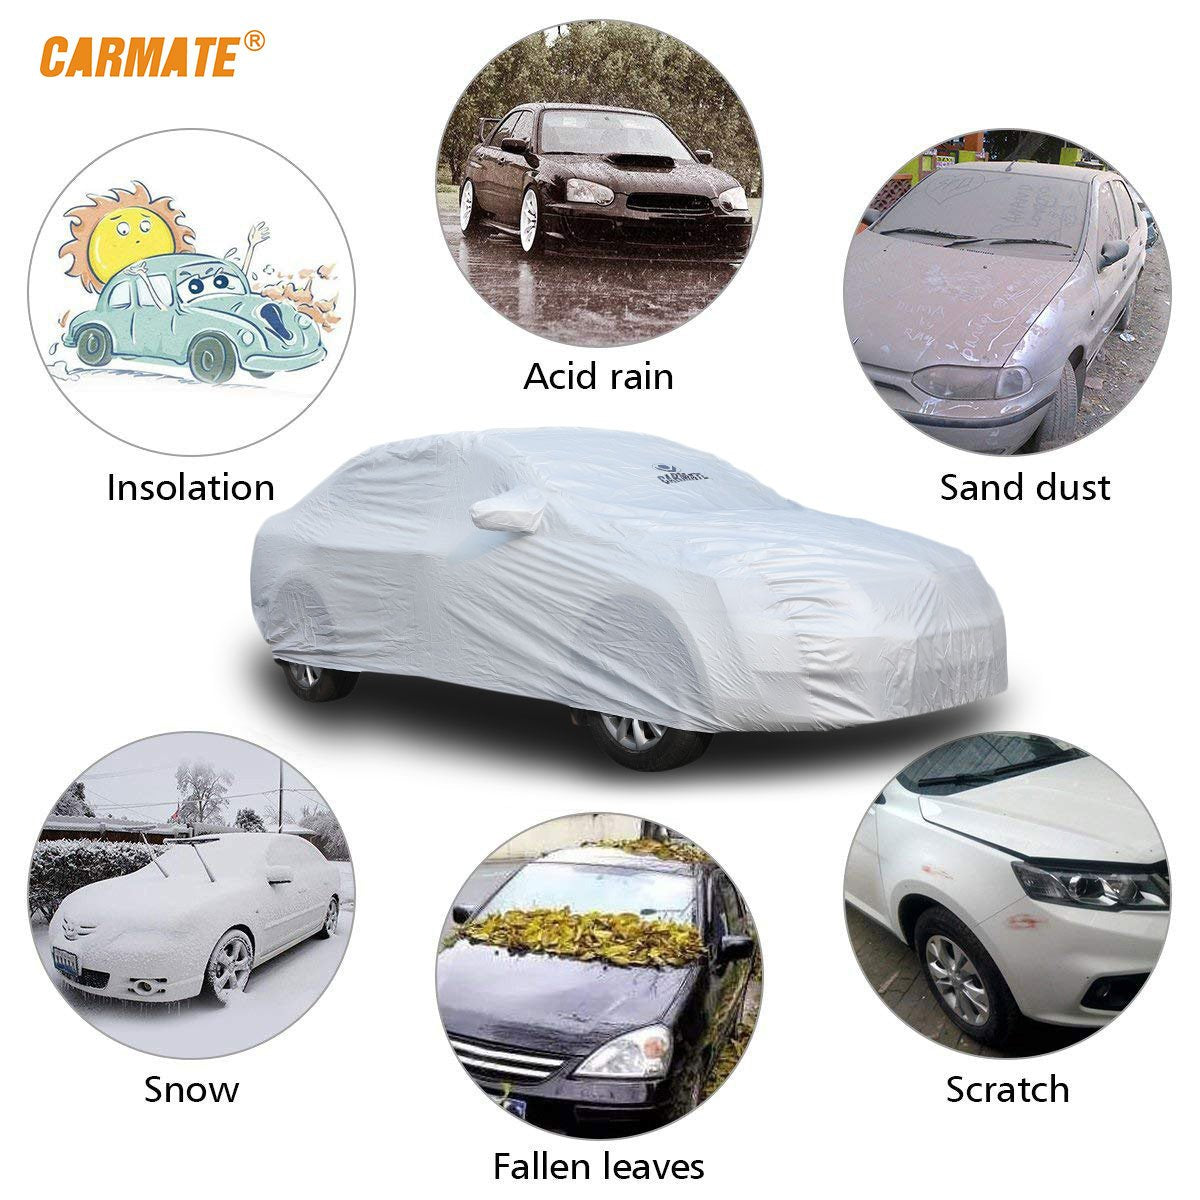 Carmate Premium Car Body Cover Silver Matty (Silver) for  Hyundai - Sonata Fludic - CARMATE®